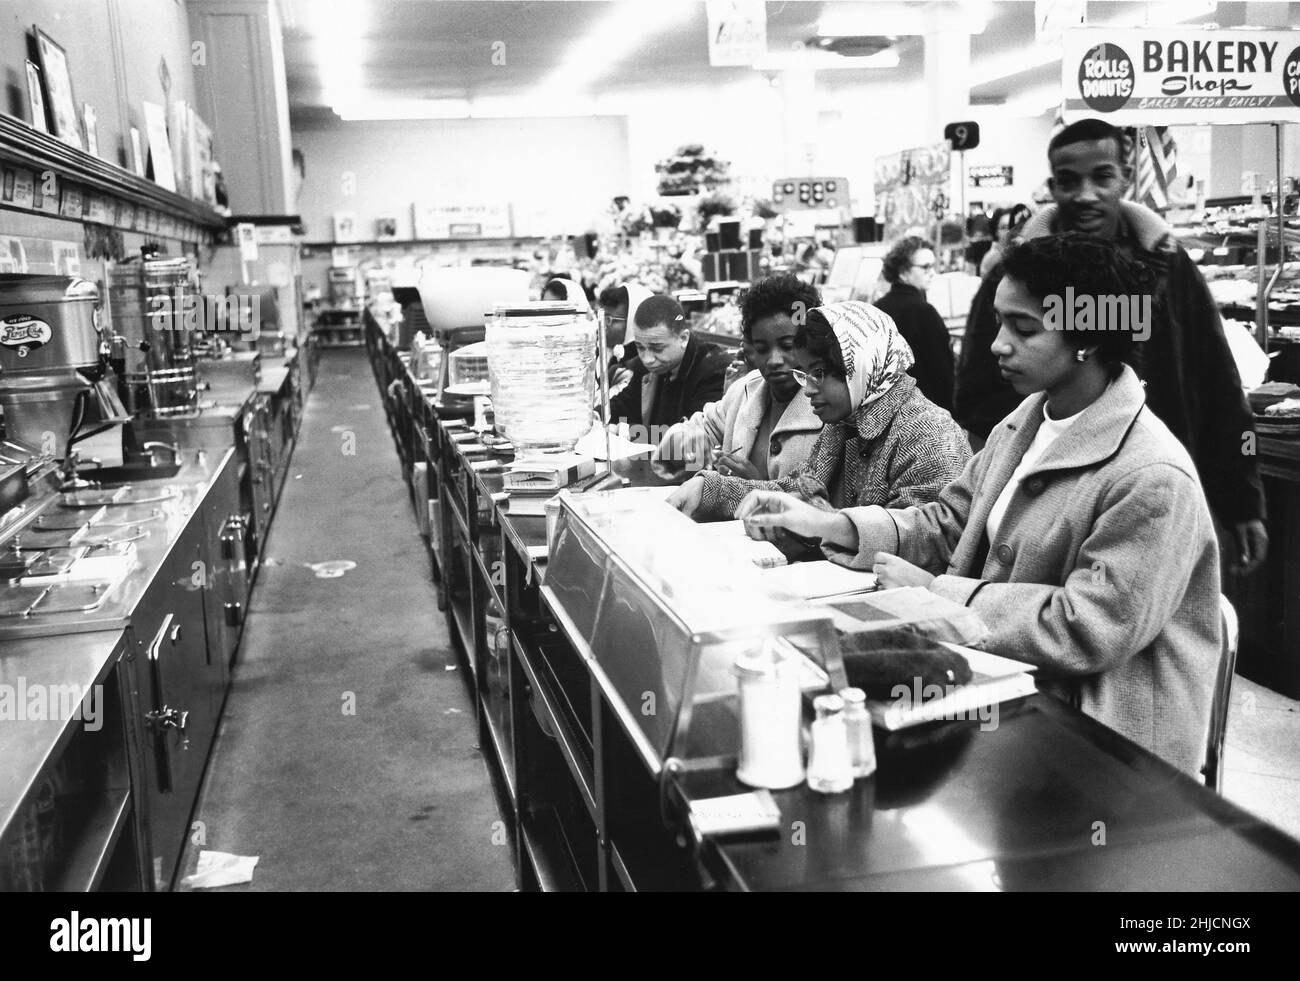 9 febbraio 1960, Charlotte, NC. Gli studenti avevano detto al capo della polizia cosa avrebbero fatto in anticipo. Il capo della polizia aveva promesso di non fare arresti se l'hanno fatto in modo ordinato e ha mantenuto la sua parola; nessuna polizia è mai apparsa ai sit-ins di Charlotte e non ci sono stati arresti. Dopo alcune ore, gli studenti sono partiti e i negozi hanno messo in su i cartelli che dicono che i loro banchi pranzo sono stati temporaneamente chiusi. Il 3rd luglio, i banchi di Woolworth sono stati riaperti a tutti. Foto Stock